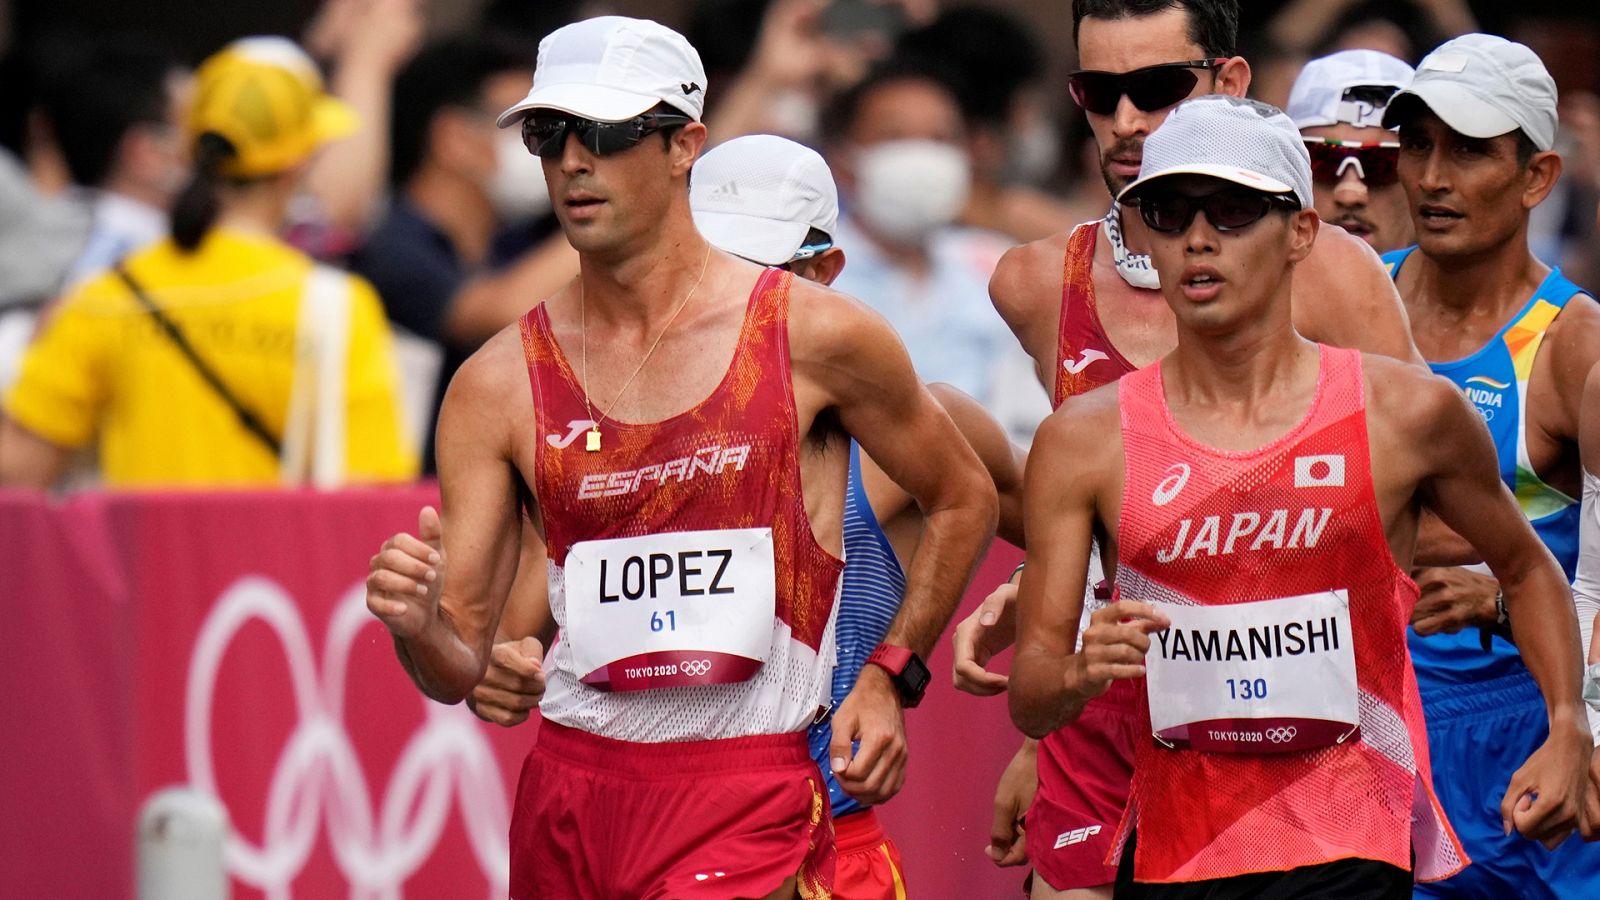 Atletismo: 20km Marcha | Tokio 2020